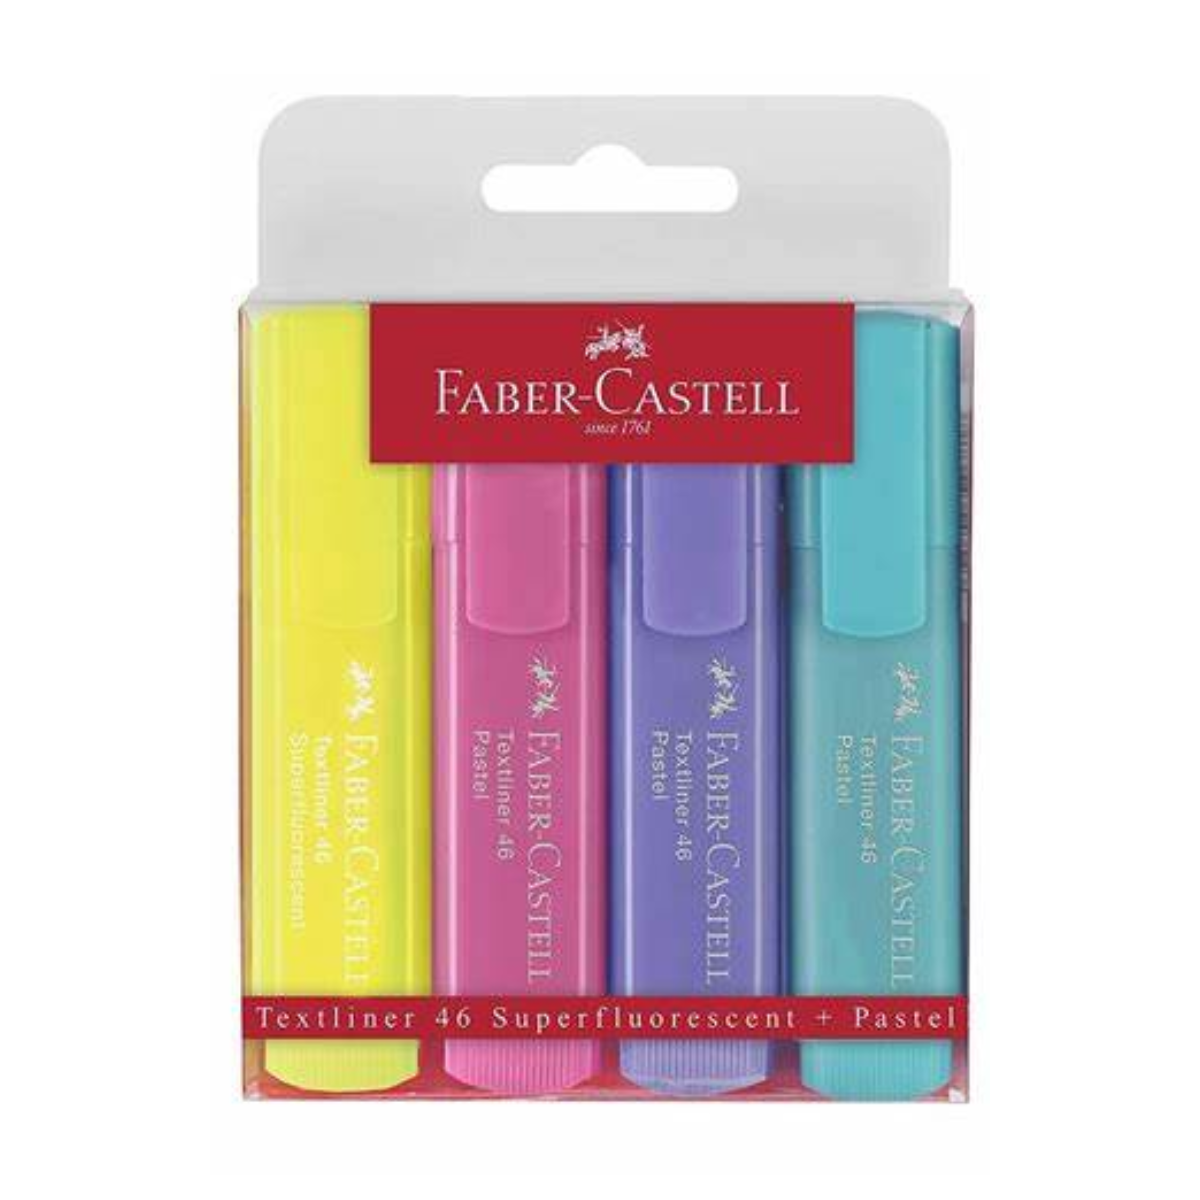 Marcadores Marcatextos Color Pastel Faber Castell Tl46 4Pz - MarchanteMX